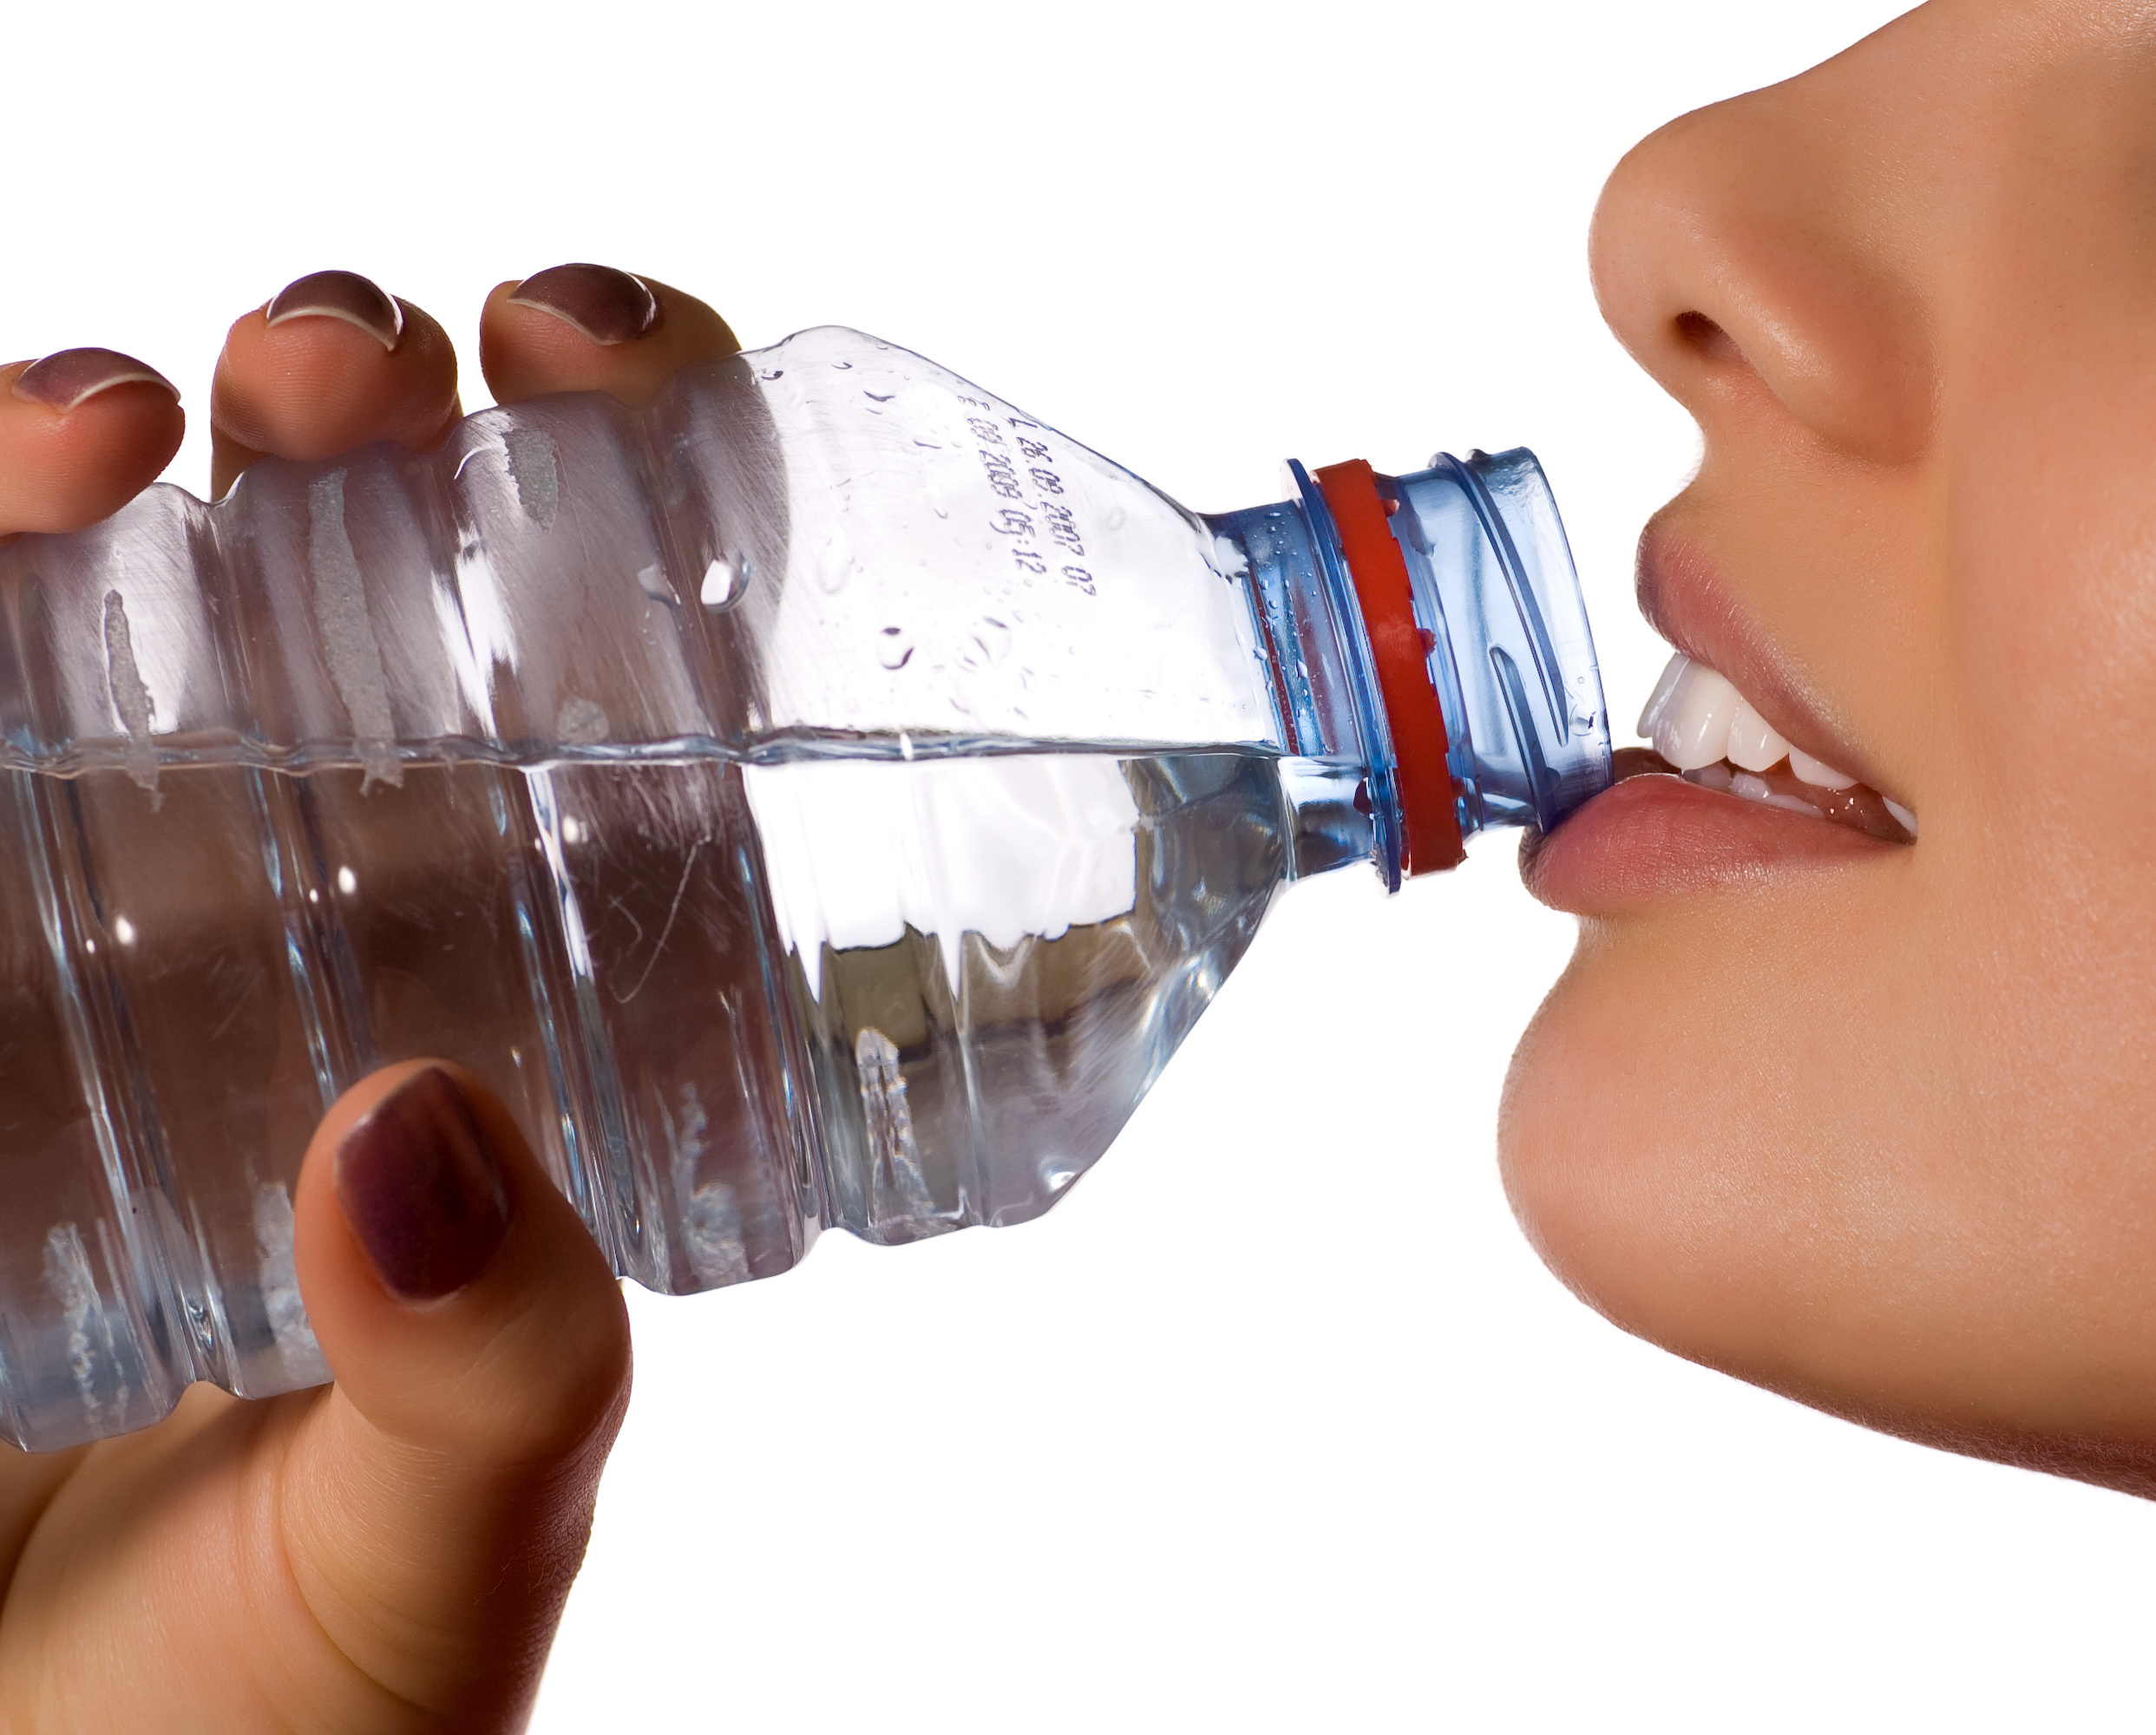 Бутылочка на один глоток забулдыге 9 букв. Пьет из бутылки. Питье Минеральных вод. Человек пьет воду из бутылки. Человек пьет воду в бутылке.